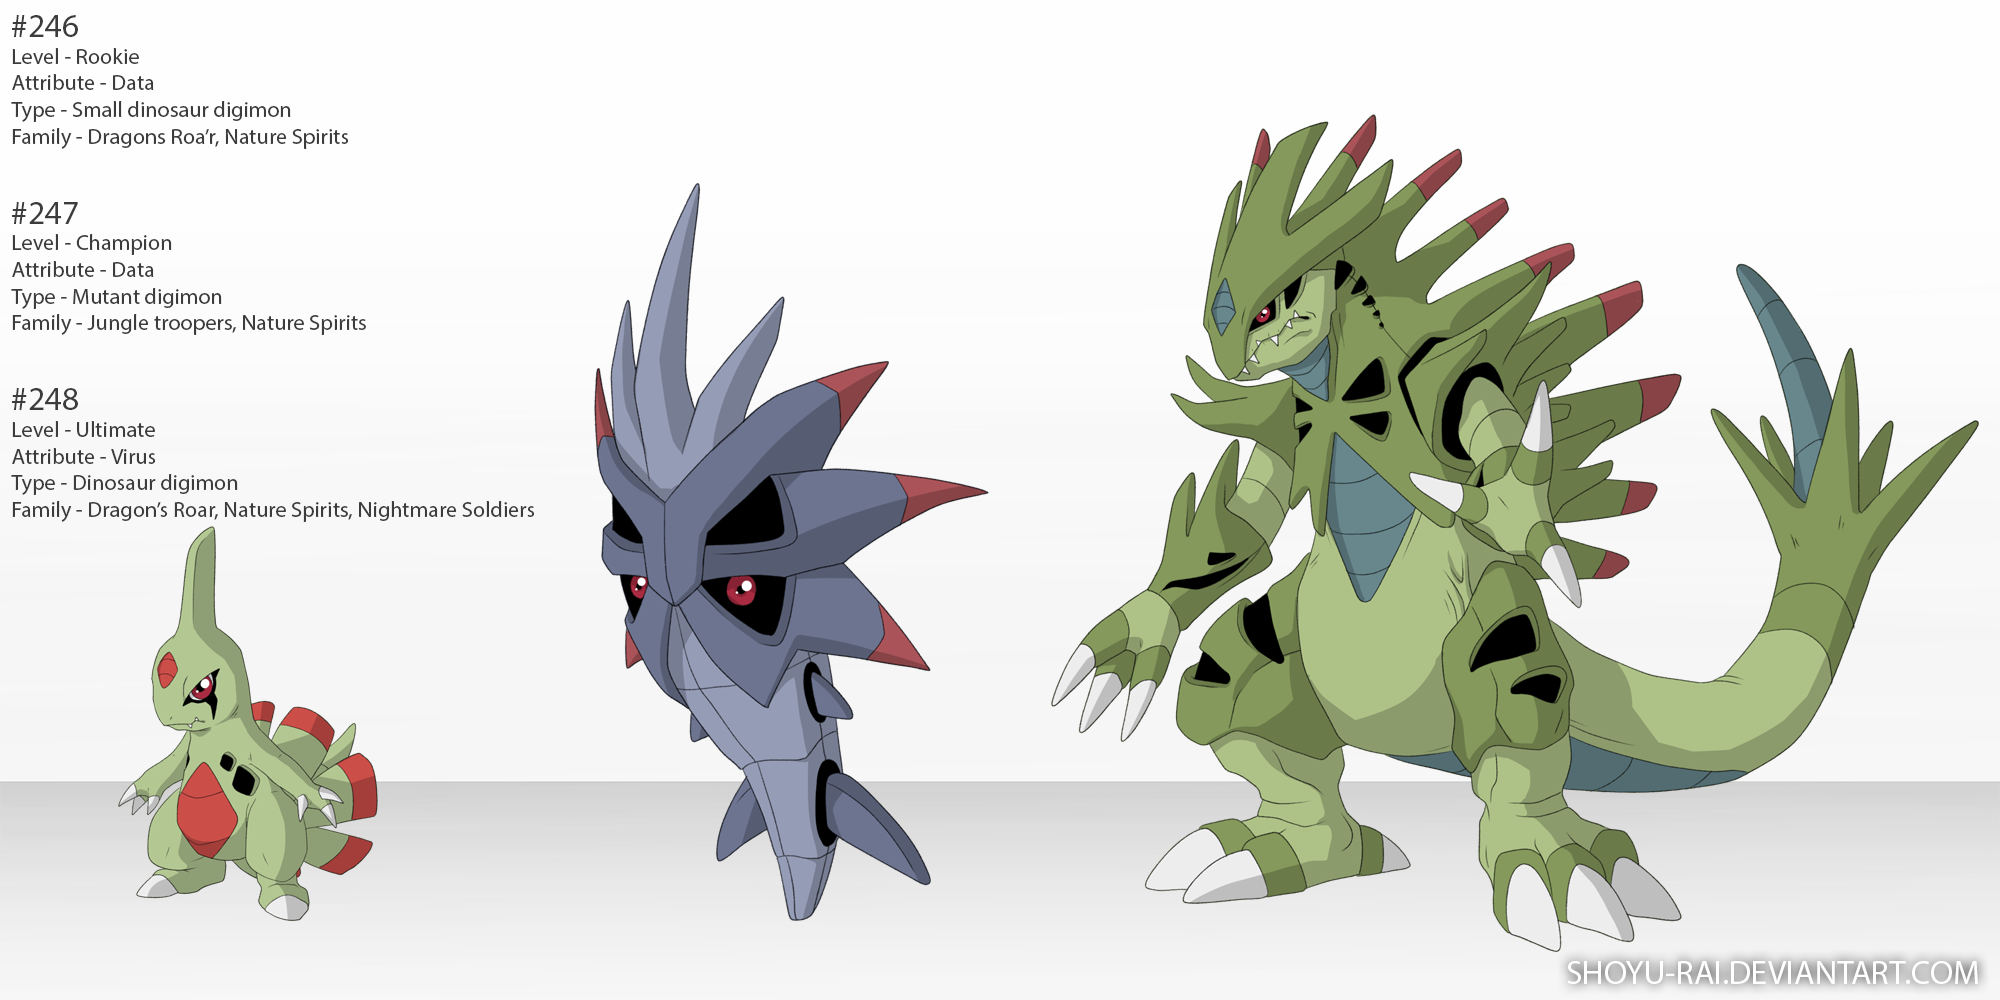 Ilustradora transforma Pokémon em Digimons – Fatos Desconhecidos